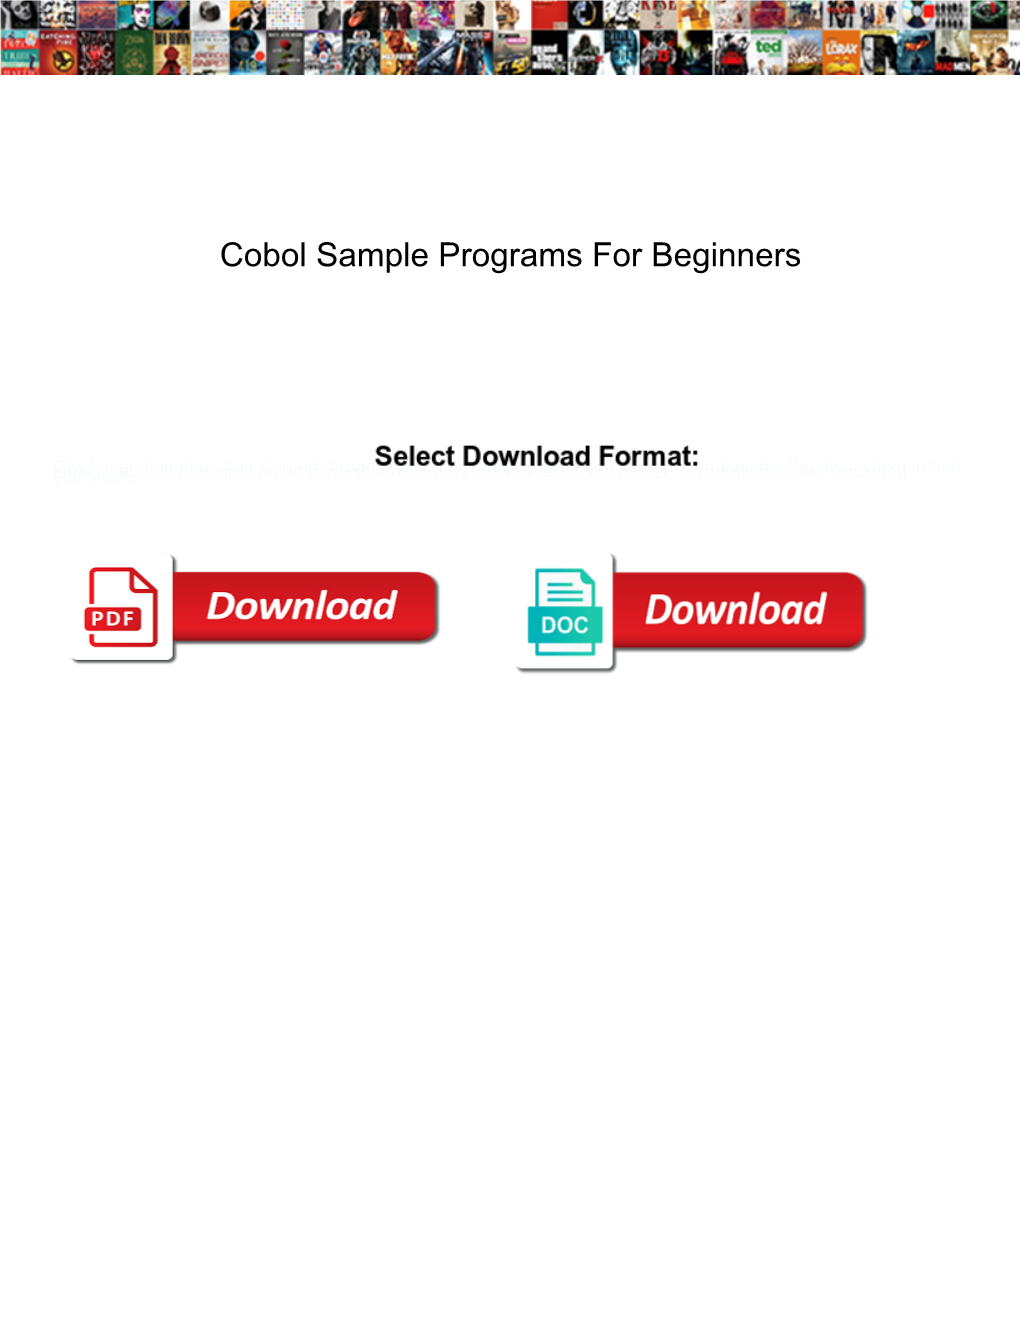 Cobol Sample Programs for Beginners